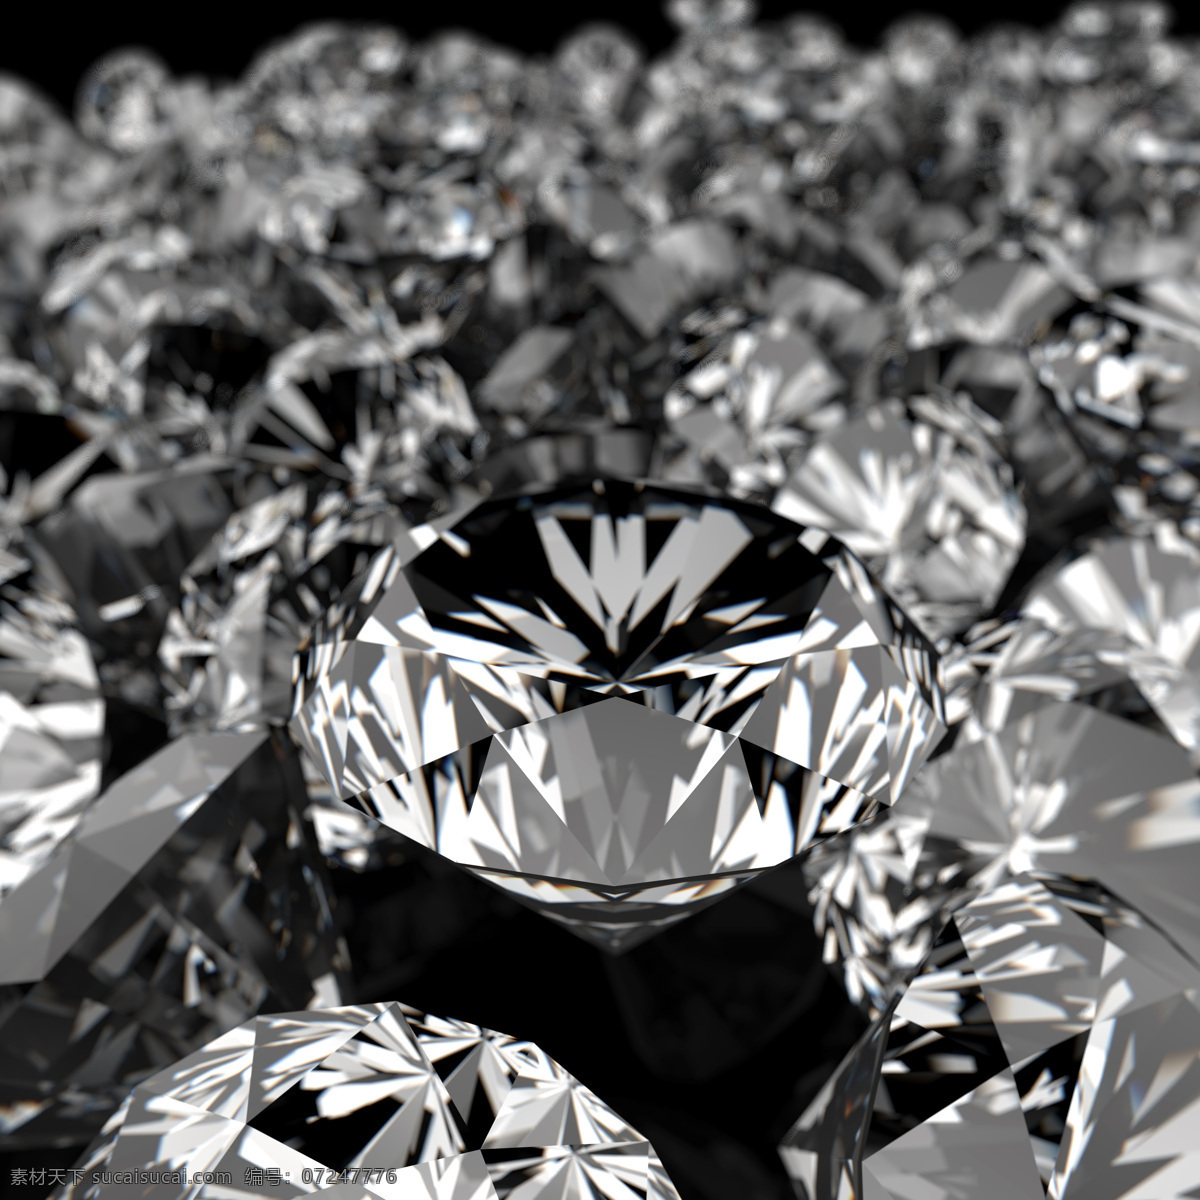 钻石 广告 素材图片 水晶 钻石摄影 钻石素材 珠宝 饰品 首饰 珠宝服饰 生活百科